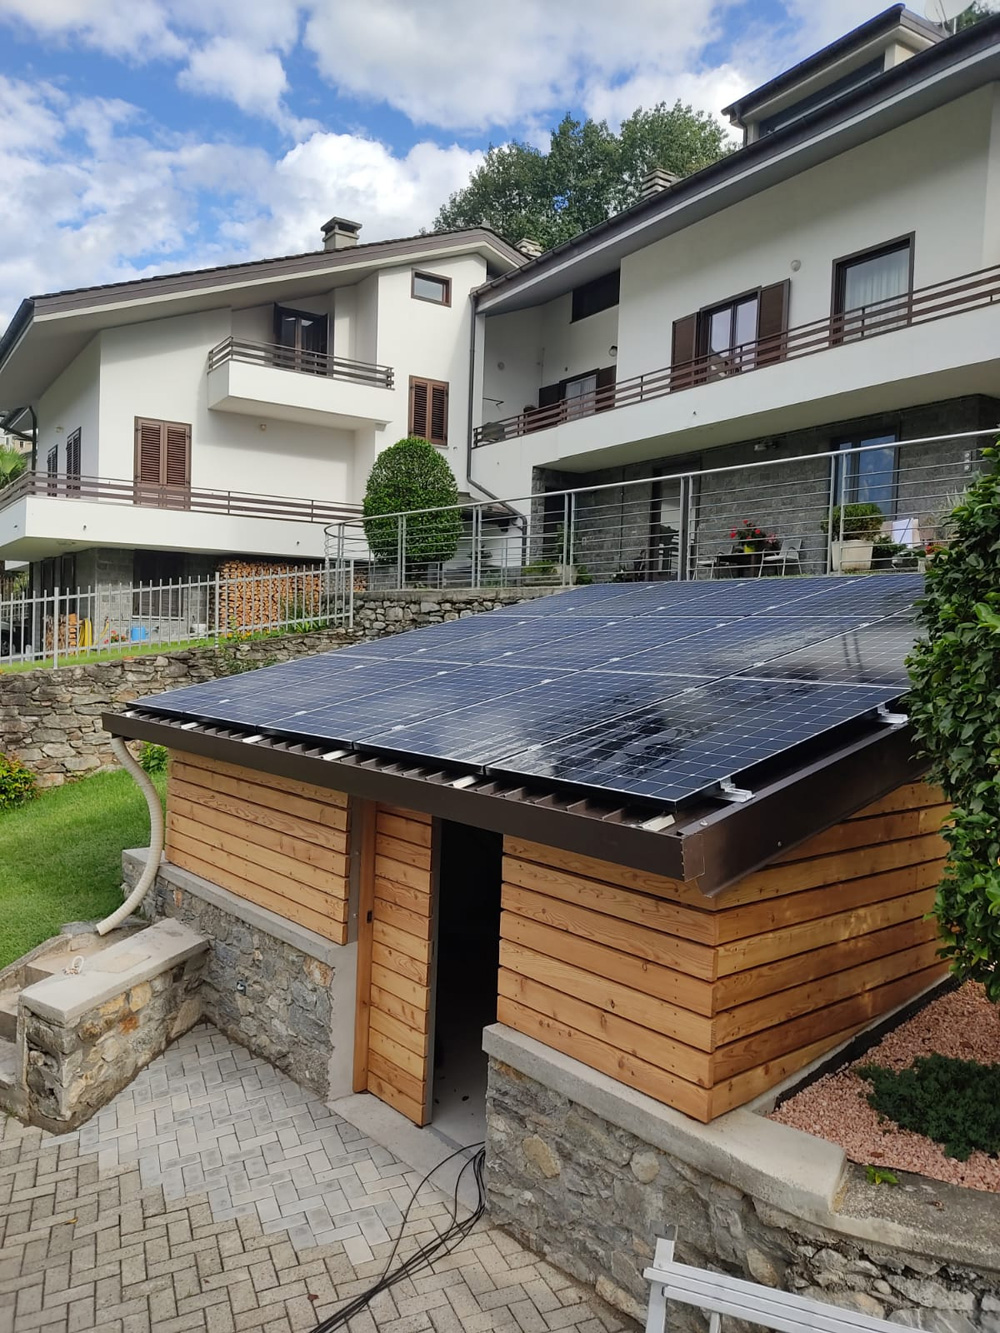 Pannelli solari SunPower di un impianto fotovoltaico a Castione Andevenno (SO)